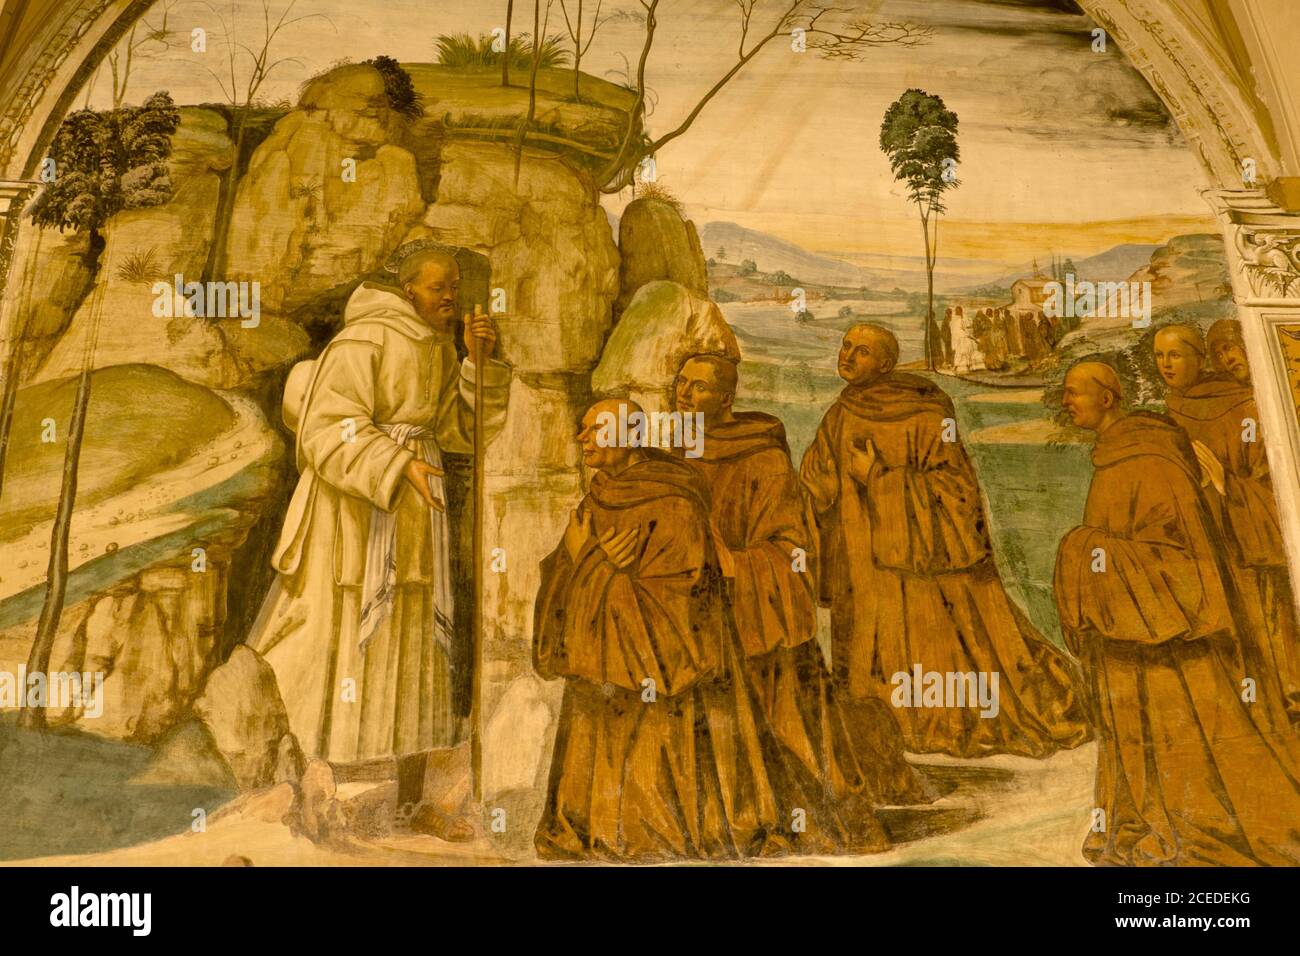 Abtei von Monte Oliveto Maggiore, Siena, Toskana - Italien, 7. März 2019: Fresko mit dem Heiligen Benedikt, der die Idee einer Gemeinschaft monasticis reift Stockfoto